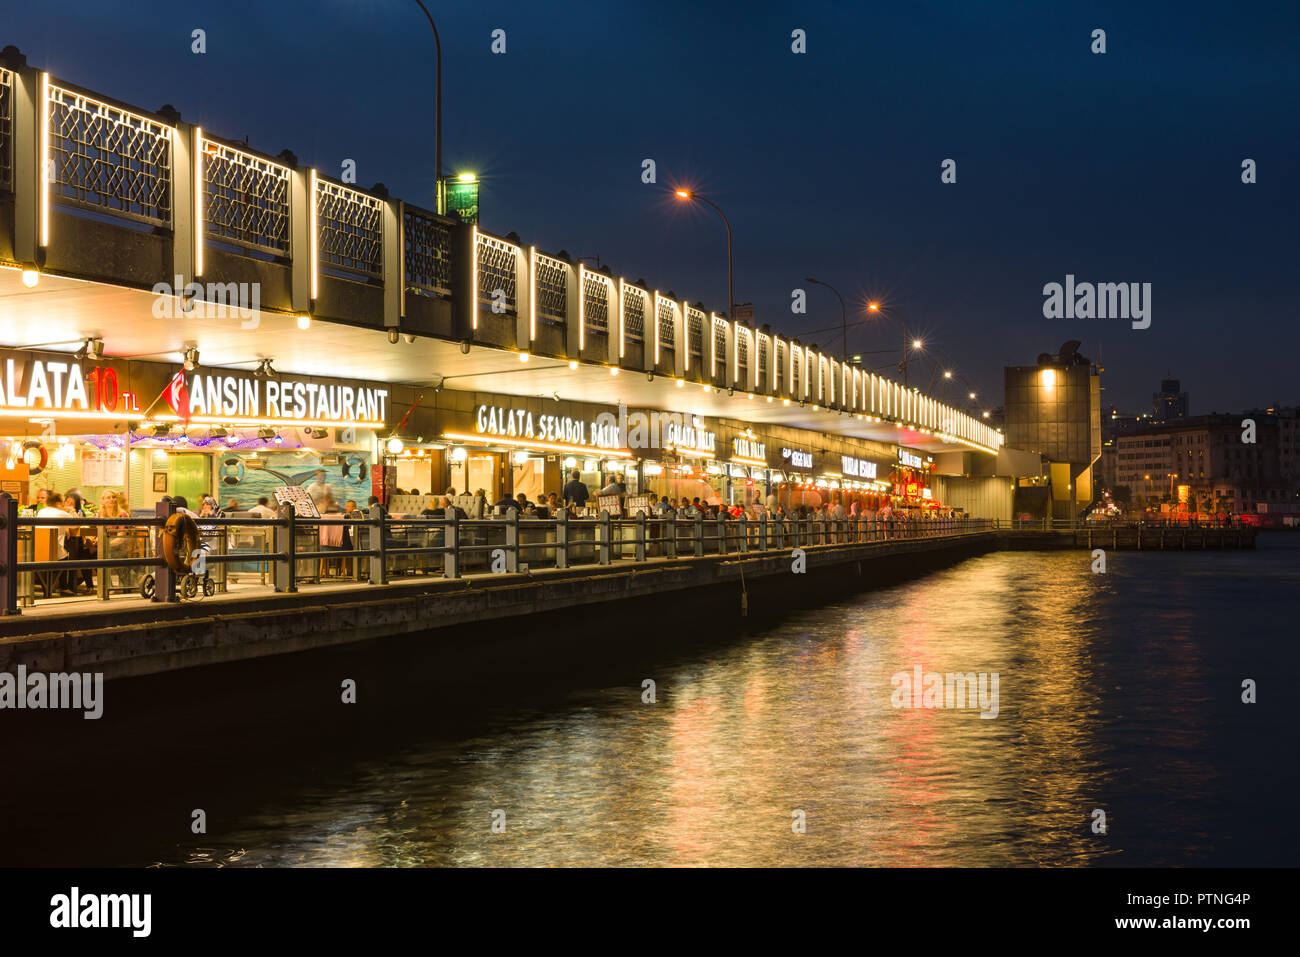 Galata Brücke bei Dämmerung mit Restaurants leuchtet, können die Gäste in den Restaurants, Istanbul, Türkei gesehen werden. Stockfoto